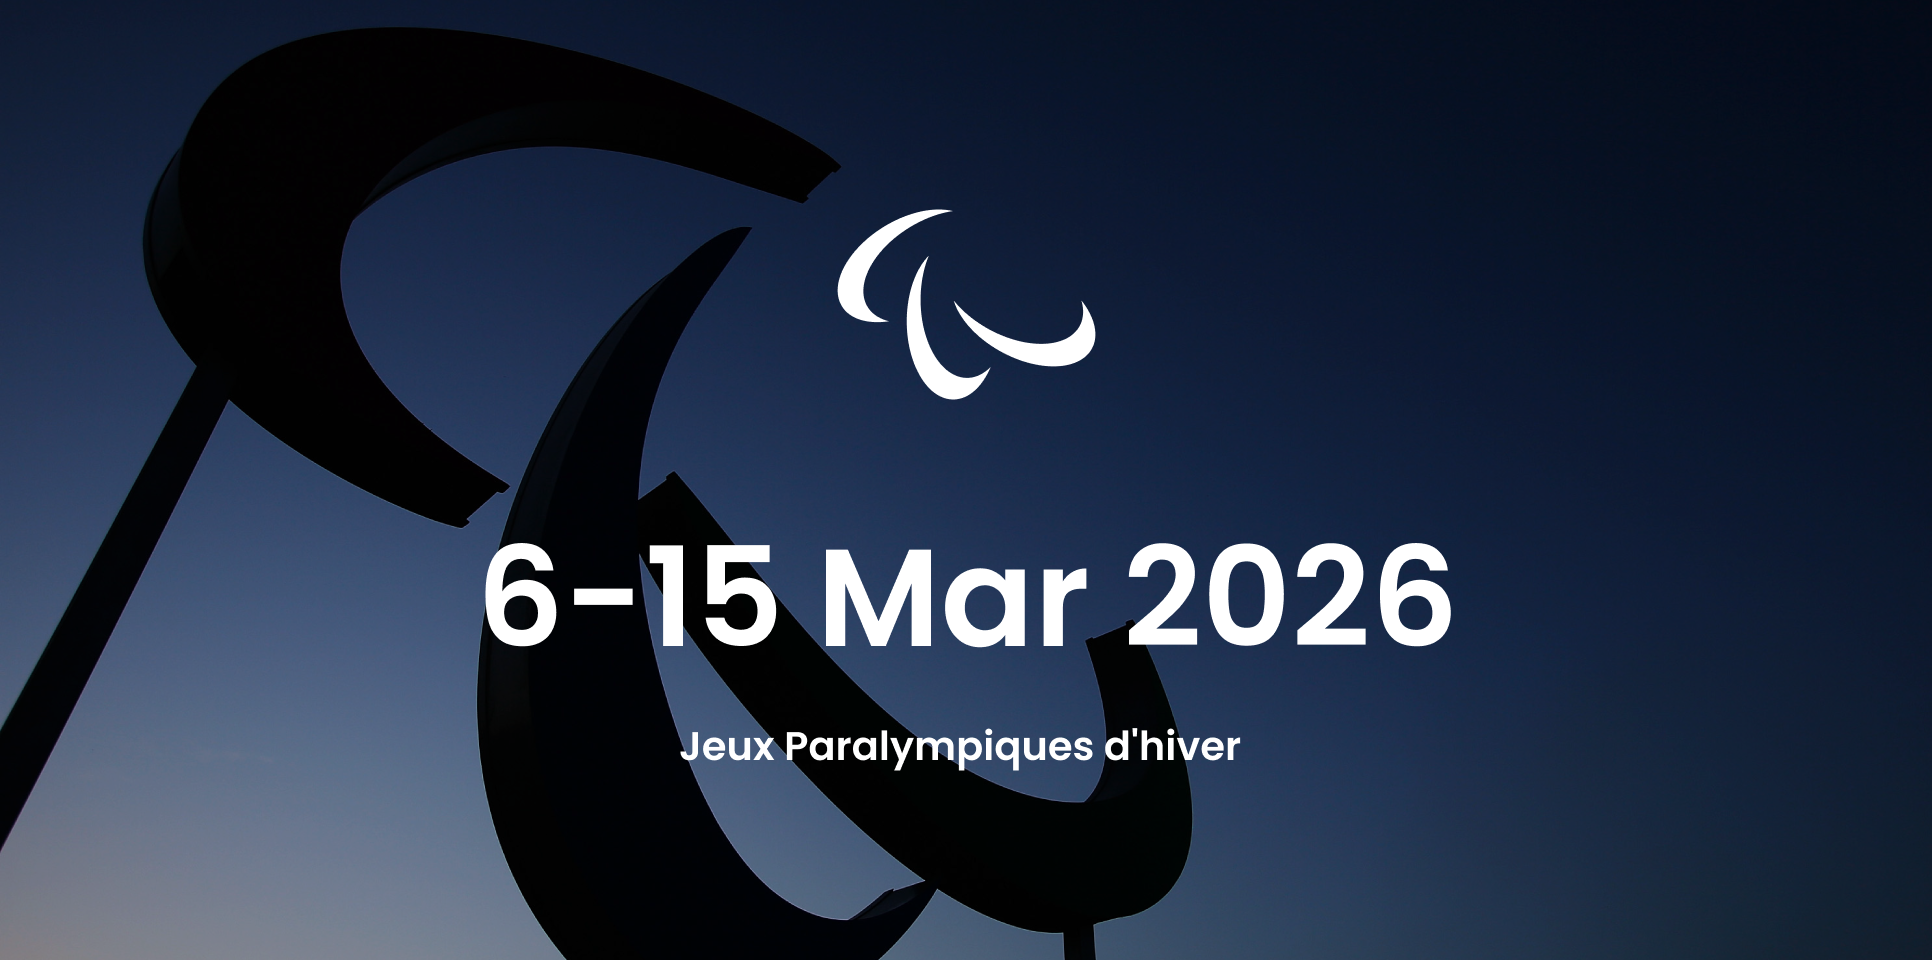 mage avec les dates de début et de fin des Jeux paralympiques d'hiver : 6 - 15 mars 2026